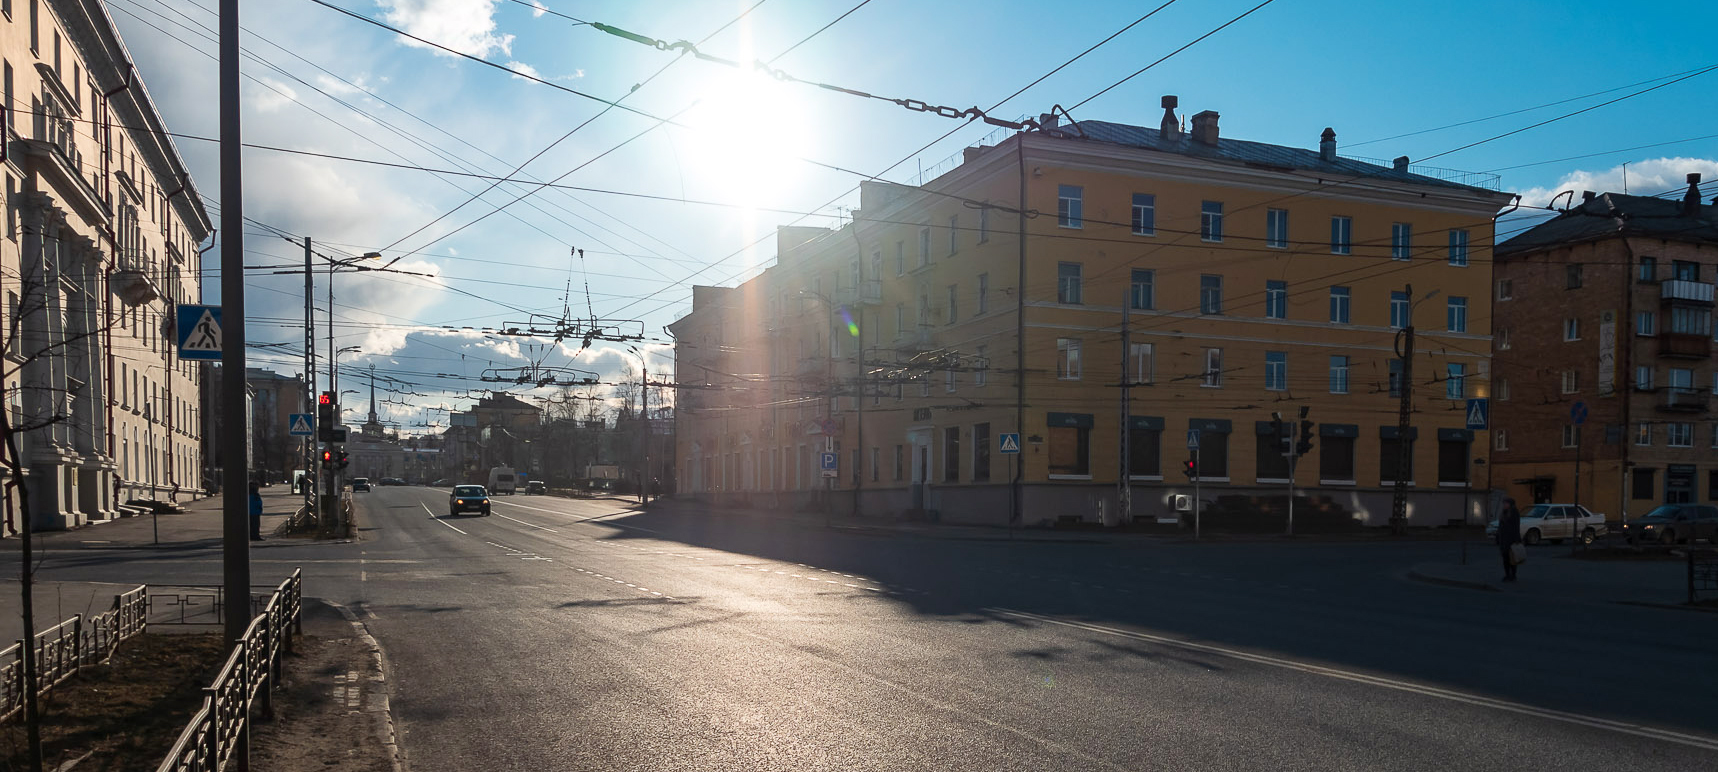 Петрозаводск попал в топ непопулярных для путешествий городов России по итогам года